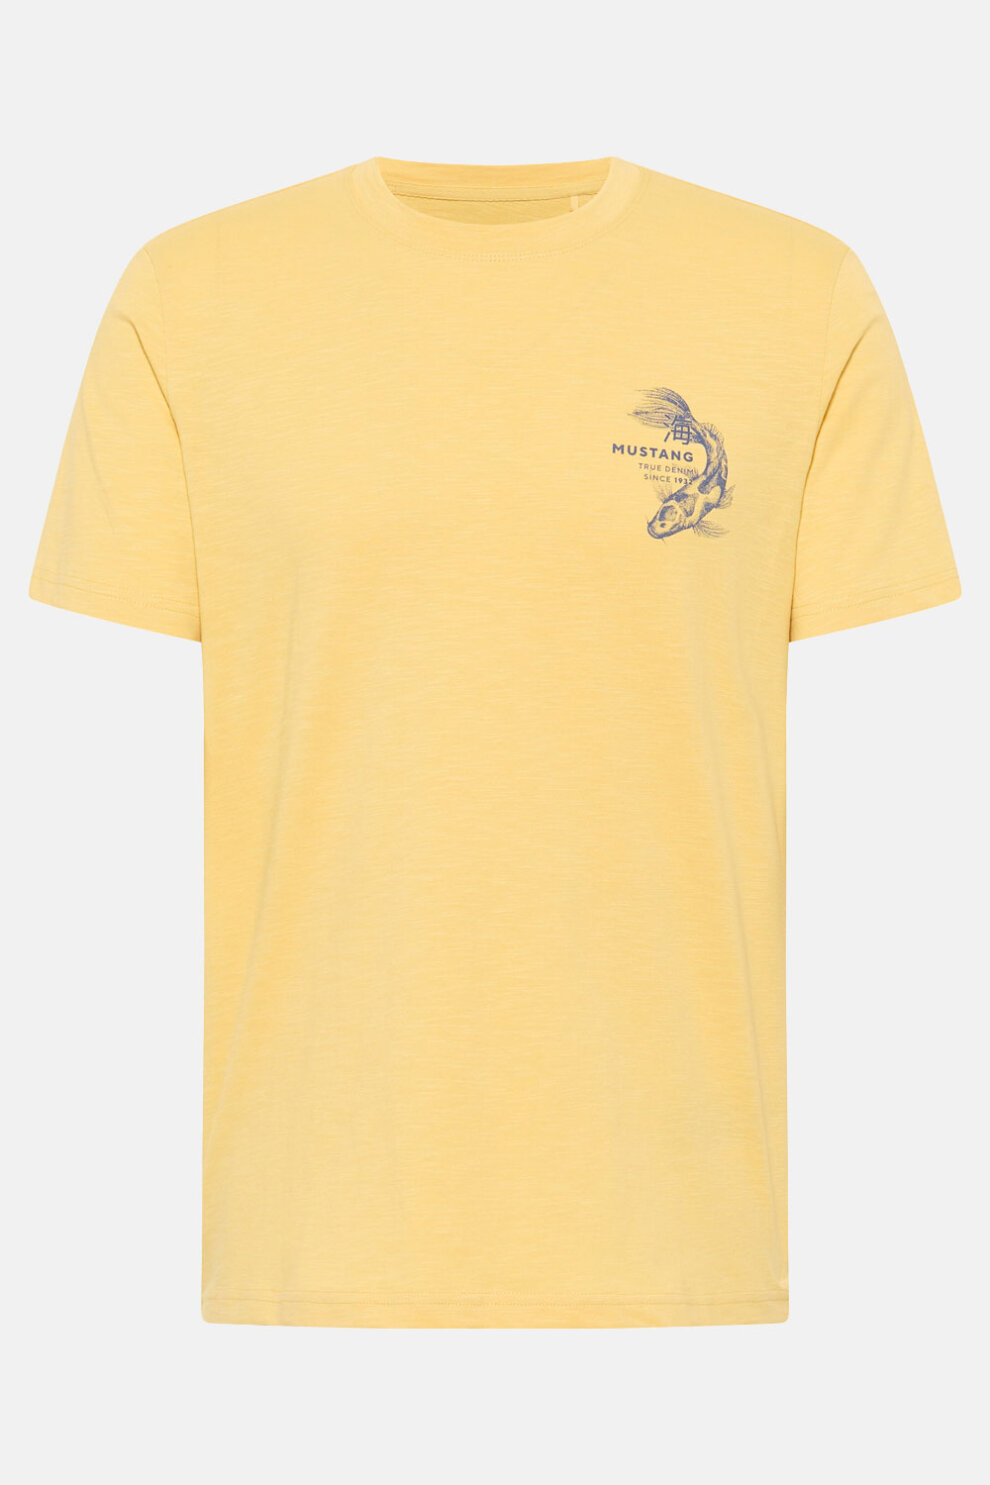 MUŠKARCI - Majice - Mustang majica - Kratki rukavi - Žuta